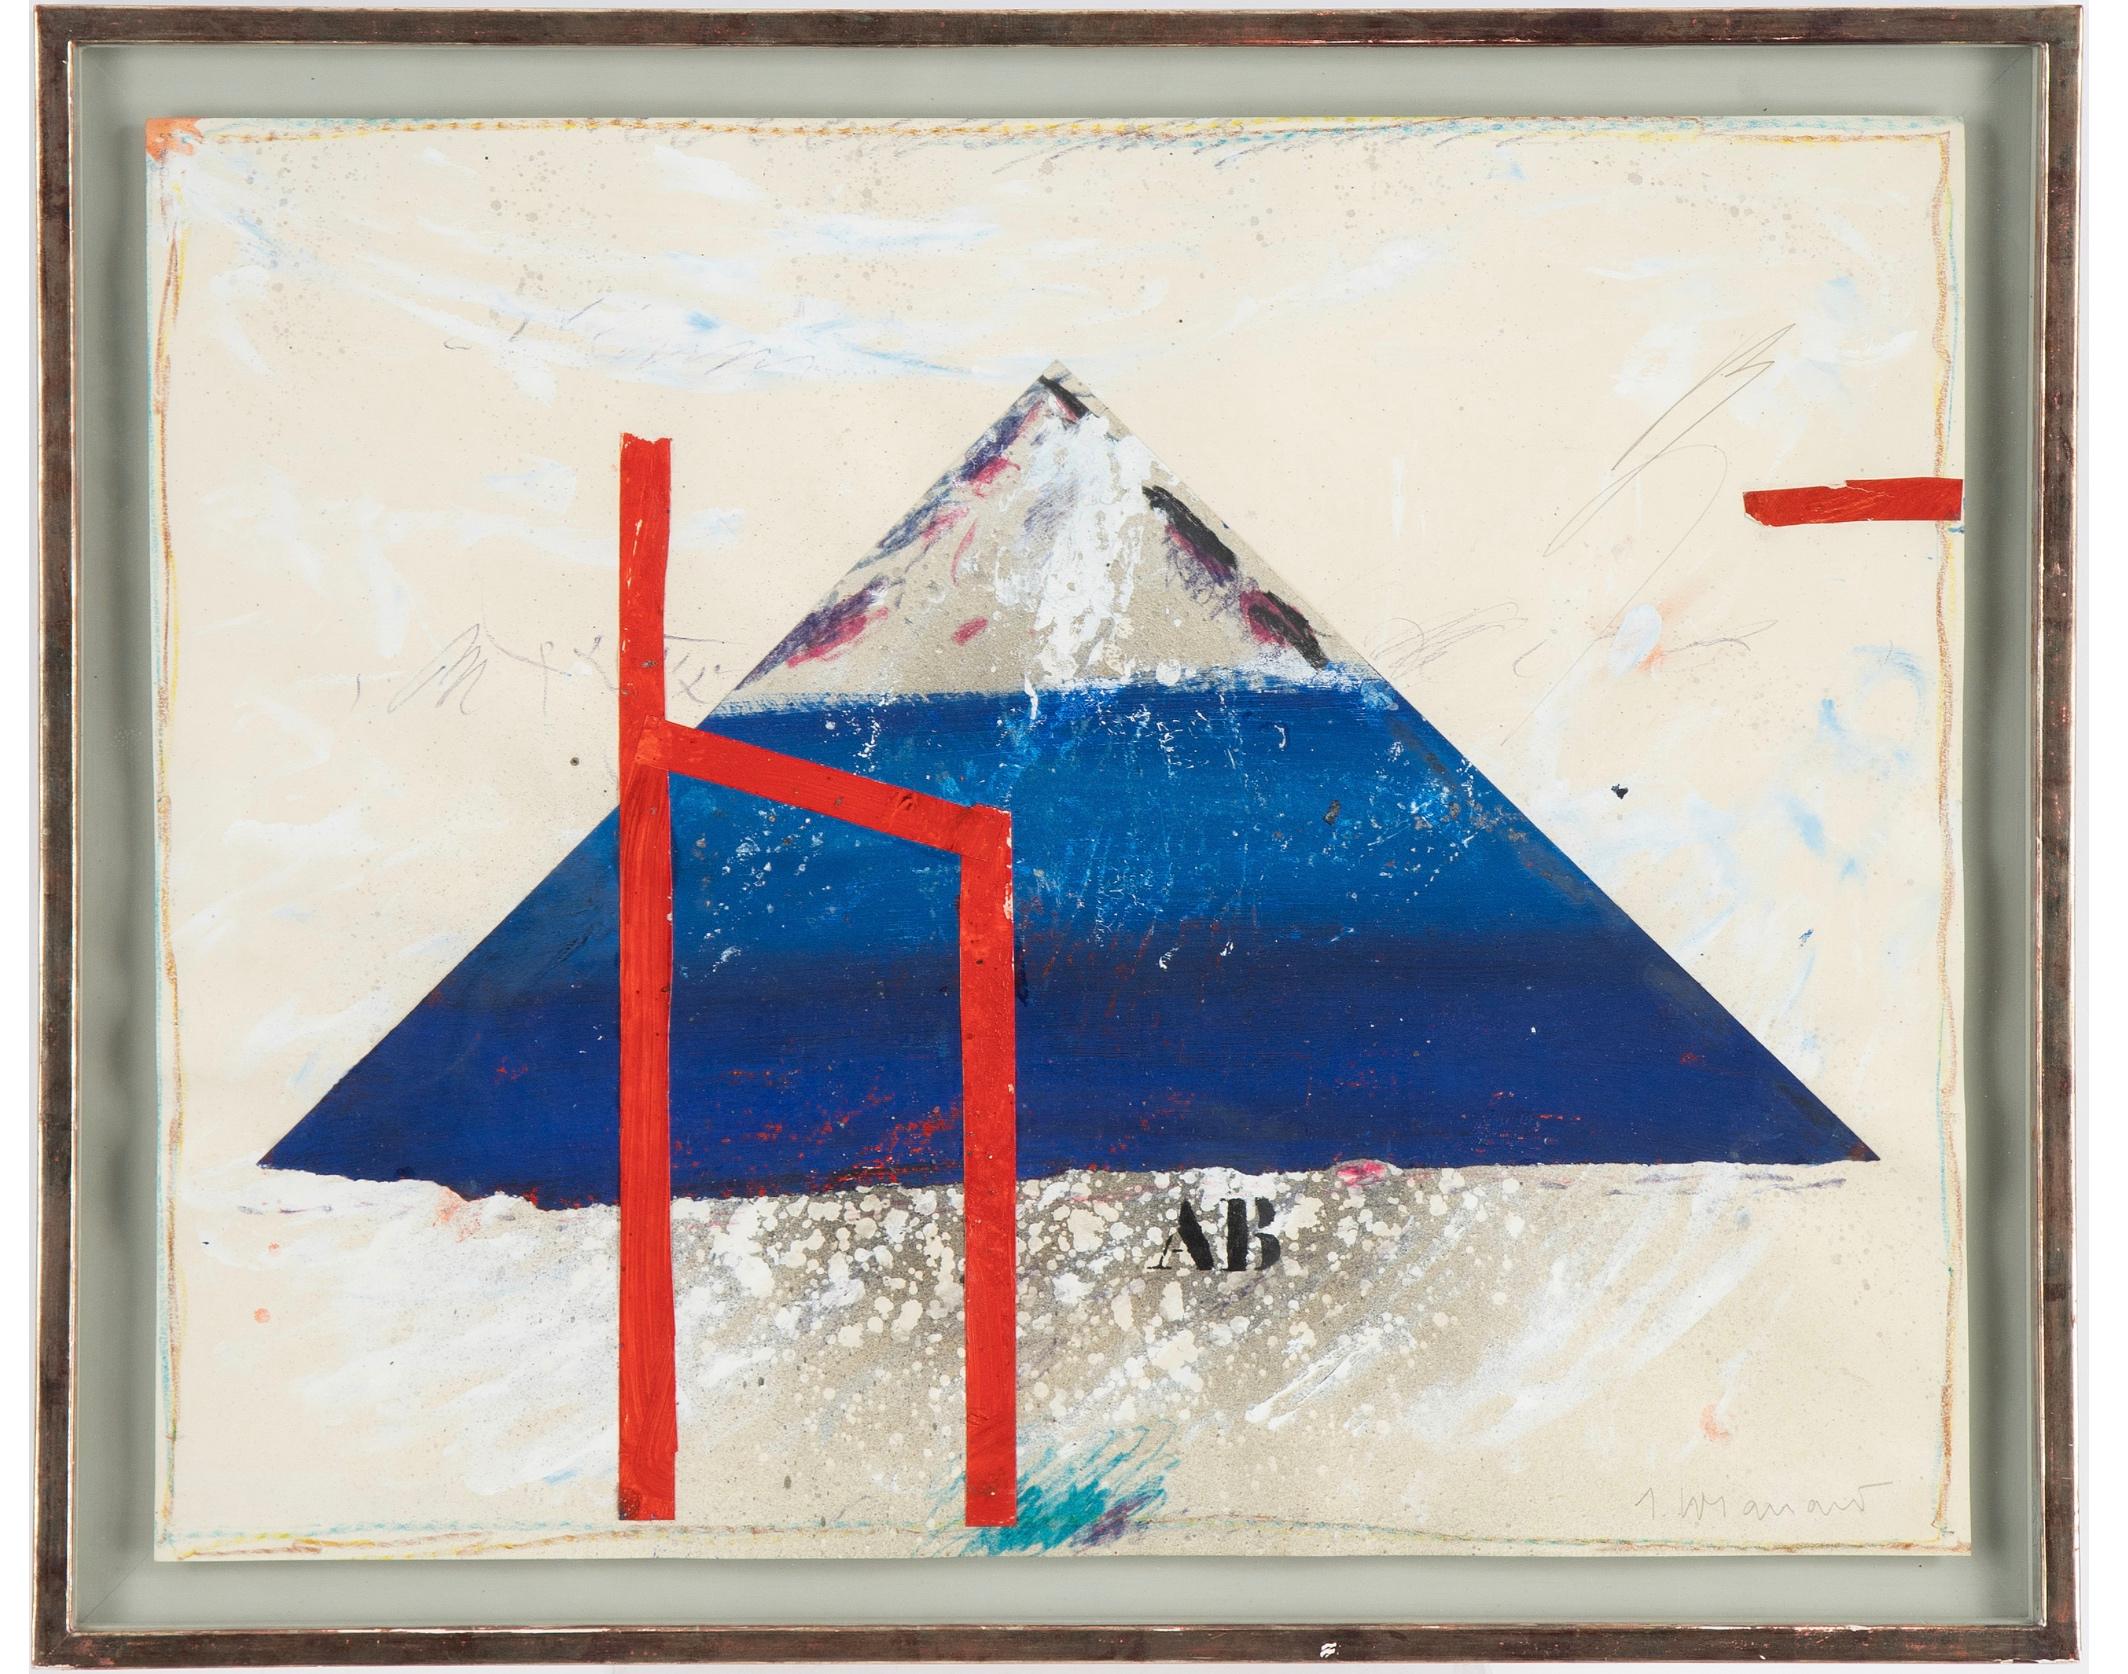 James Coignard (Frankreich 1925-2008), Gouache und Collage auf Papier, signiert, gerahmt.

Blattgröße 48 x 61 cm.